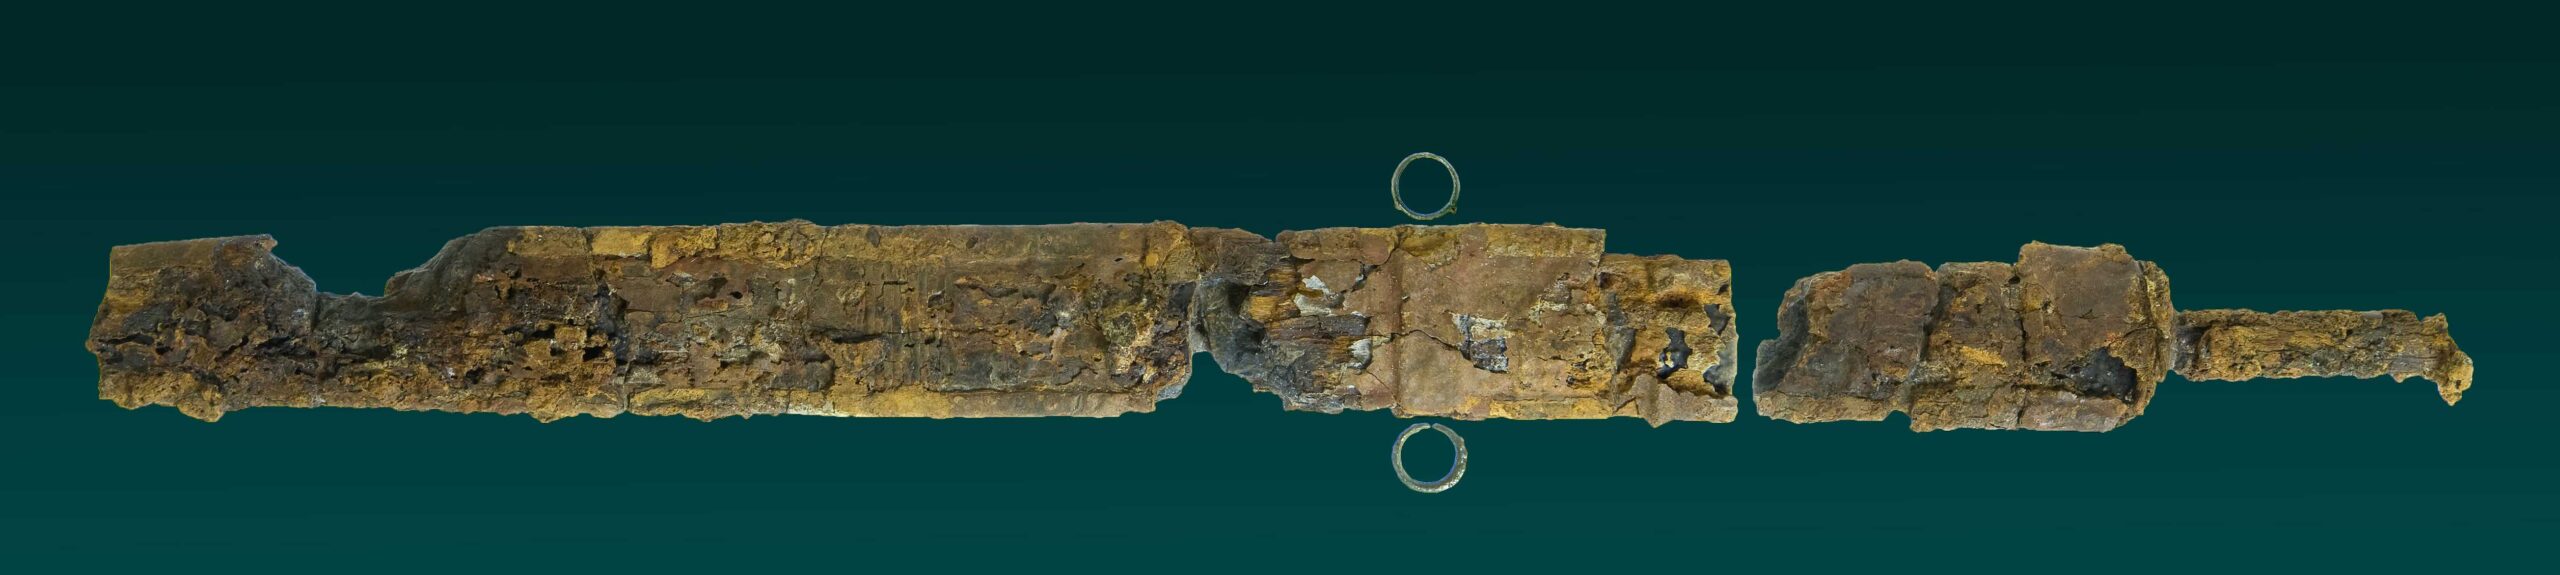 חרב רומית שהתגלתה בחפירות תעלת הניקוז בעיר דוד